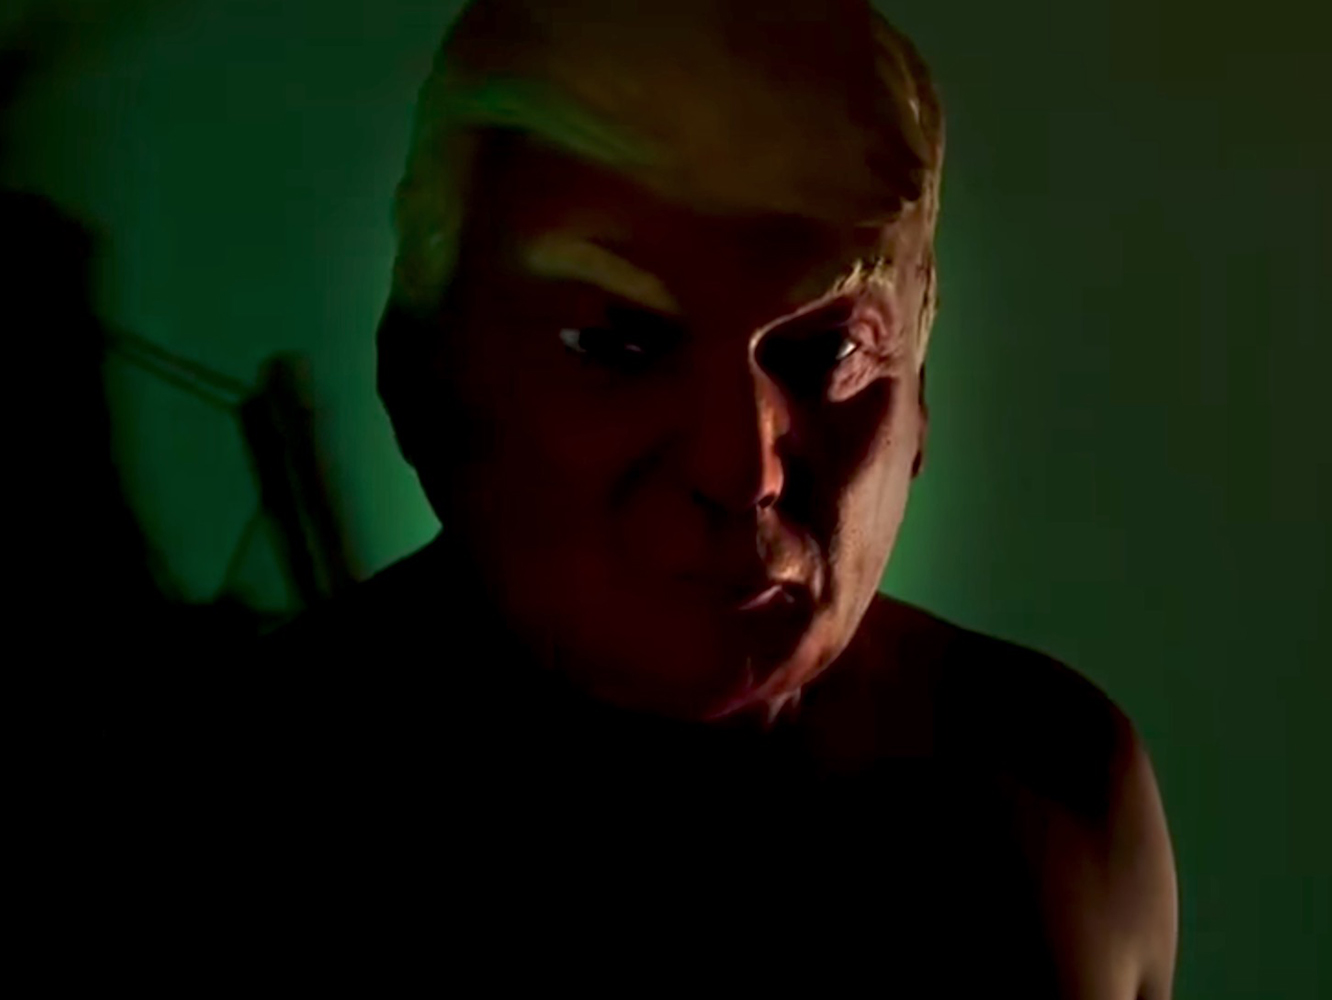  Política cabecera para ‘American Horror Story: Cult’, con Trump y Clinton